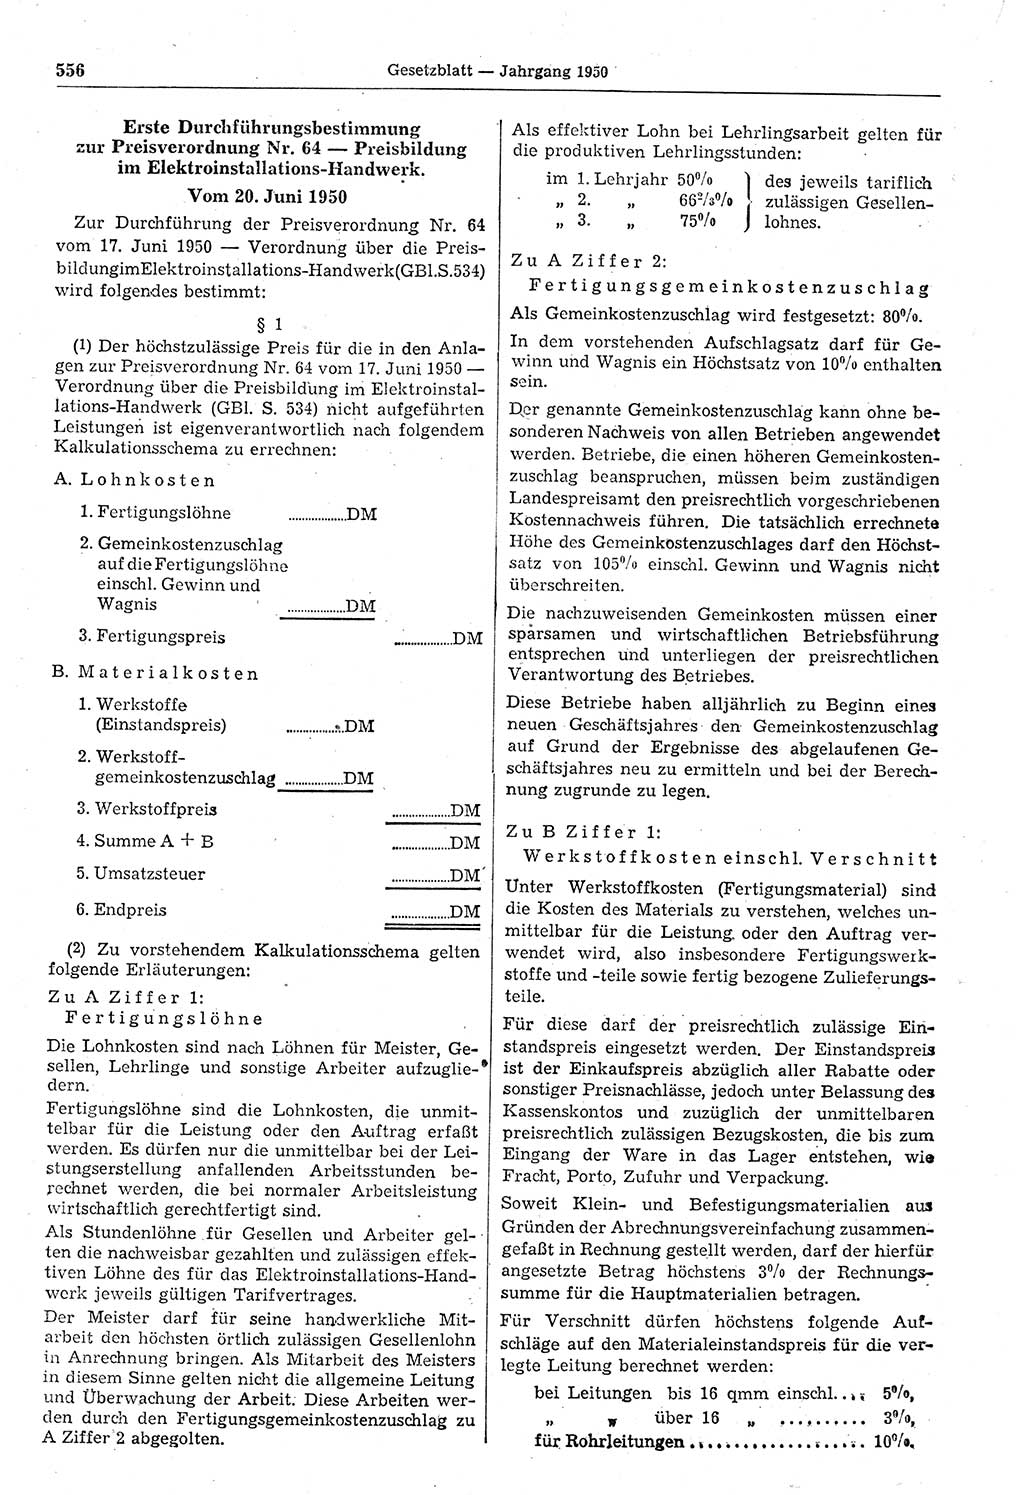 Gesetzblatt (GBl.) der Deutschen Demokratischen Republik (DDR) 1950, Seite 556 (GBl. DDR 1950, S. 556)